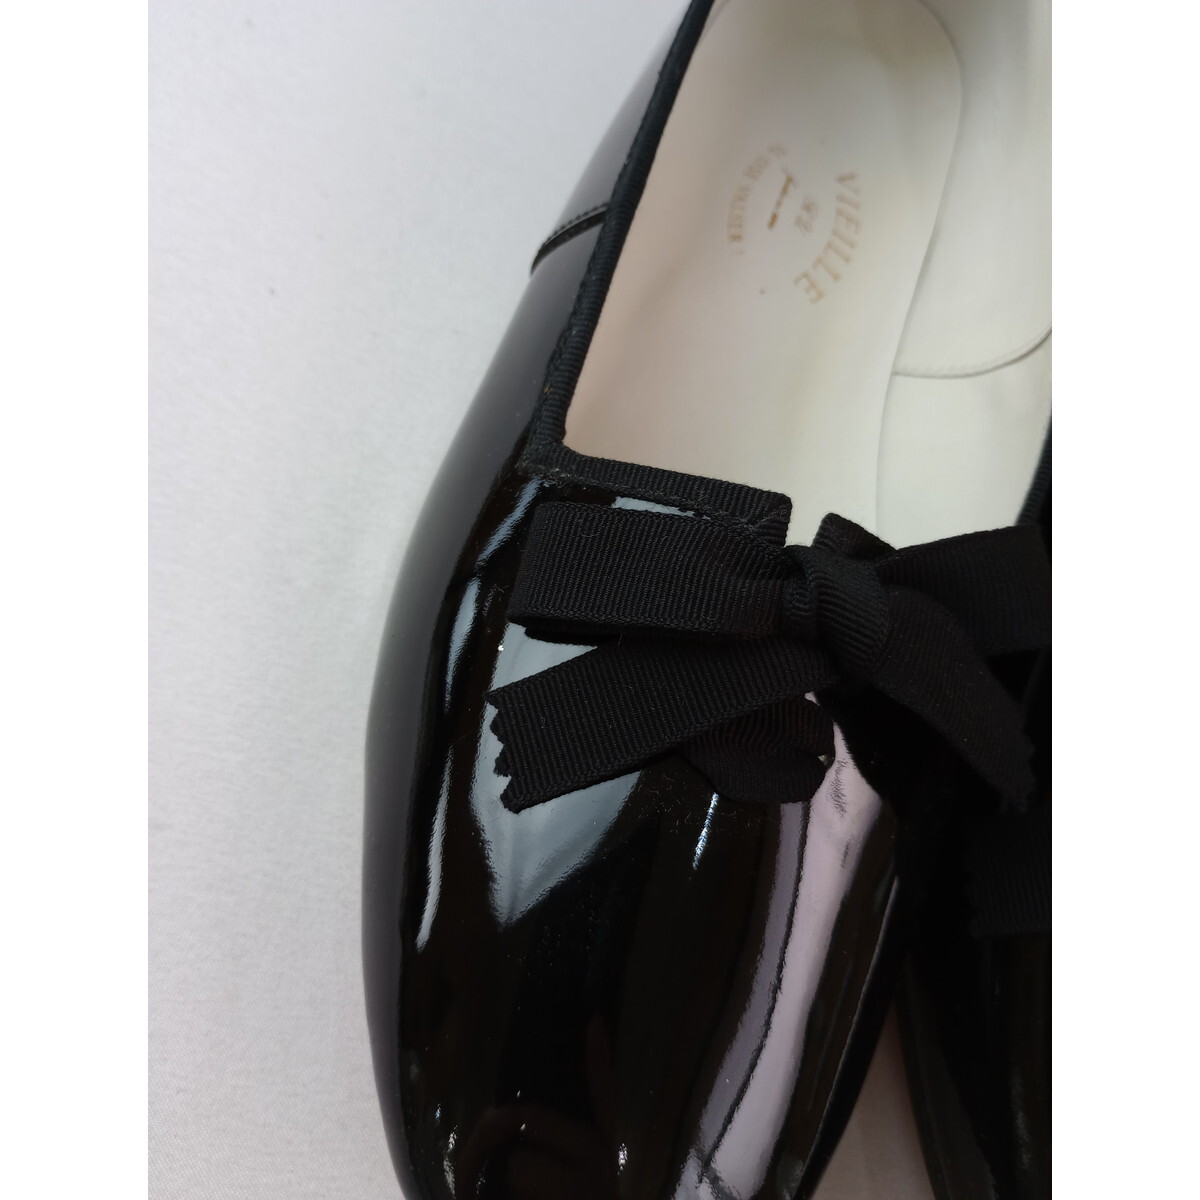 VIEILLE vi eiyu лента эмаль обувь чёрный черный 39 24.5